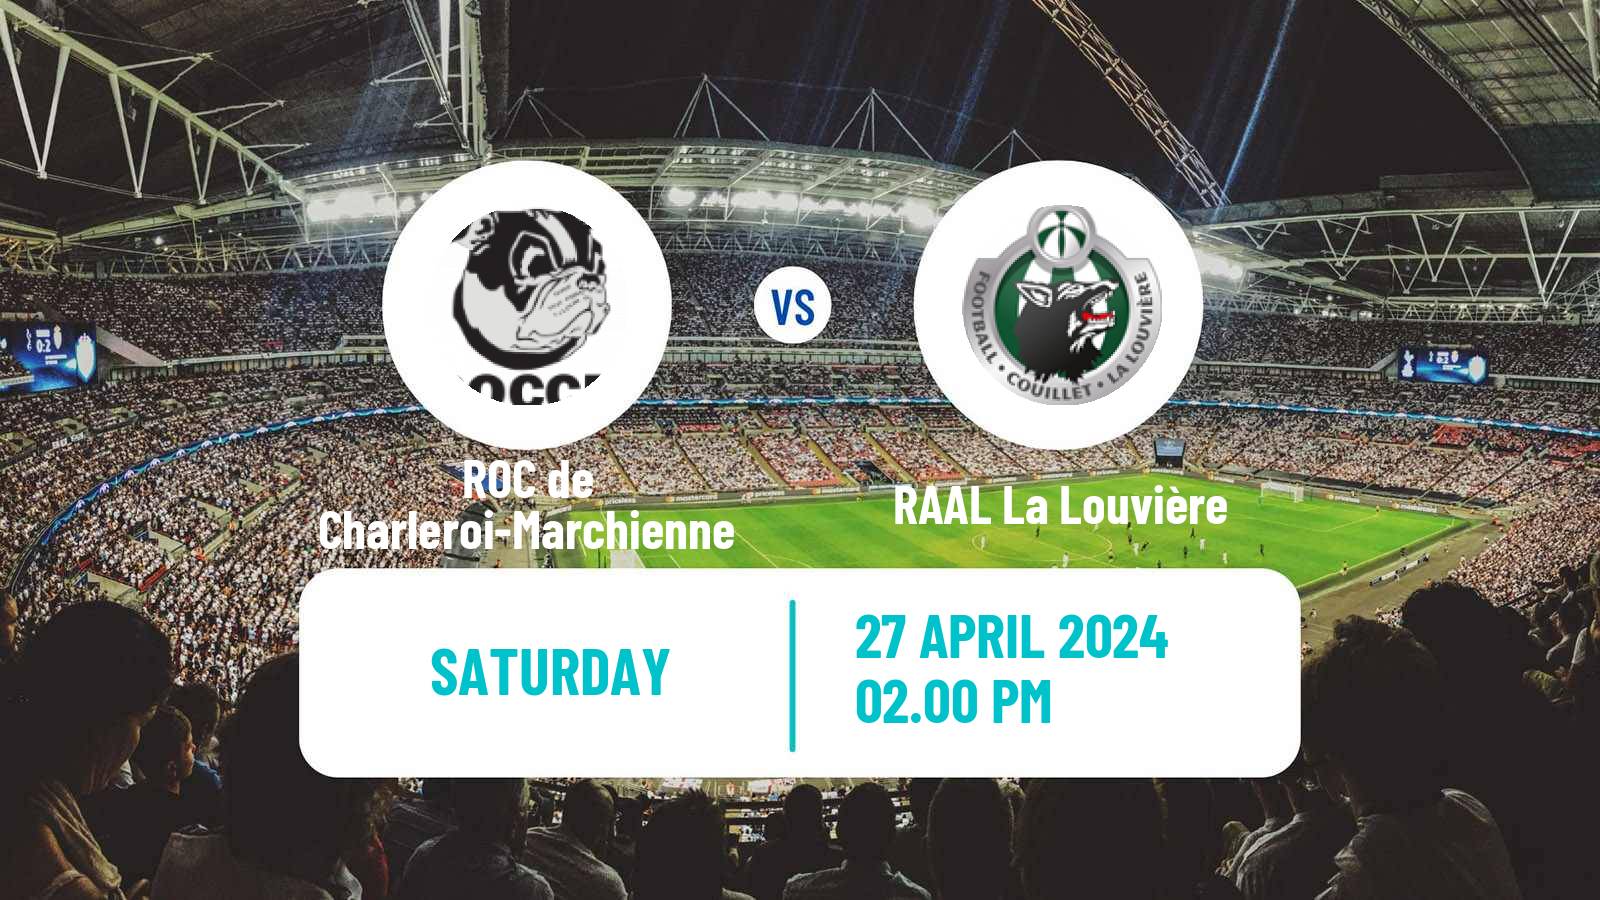 Soccer Belgian National Division 1 ROC de Charleroi-Marchienne - RAAL La Louvière